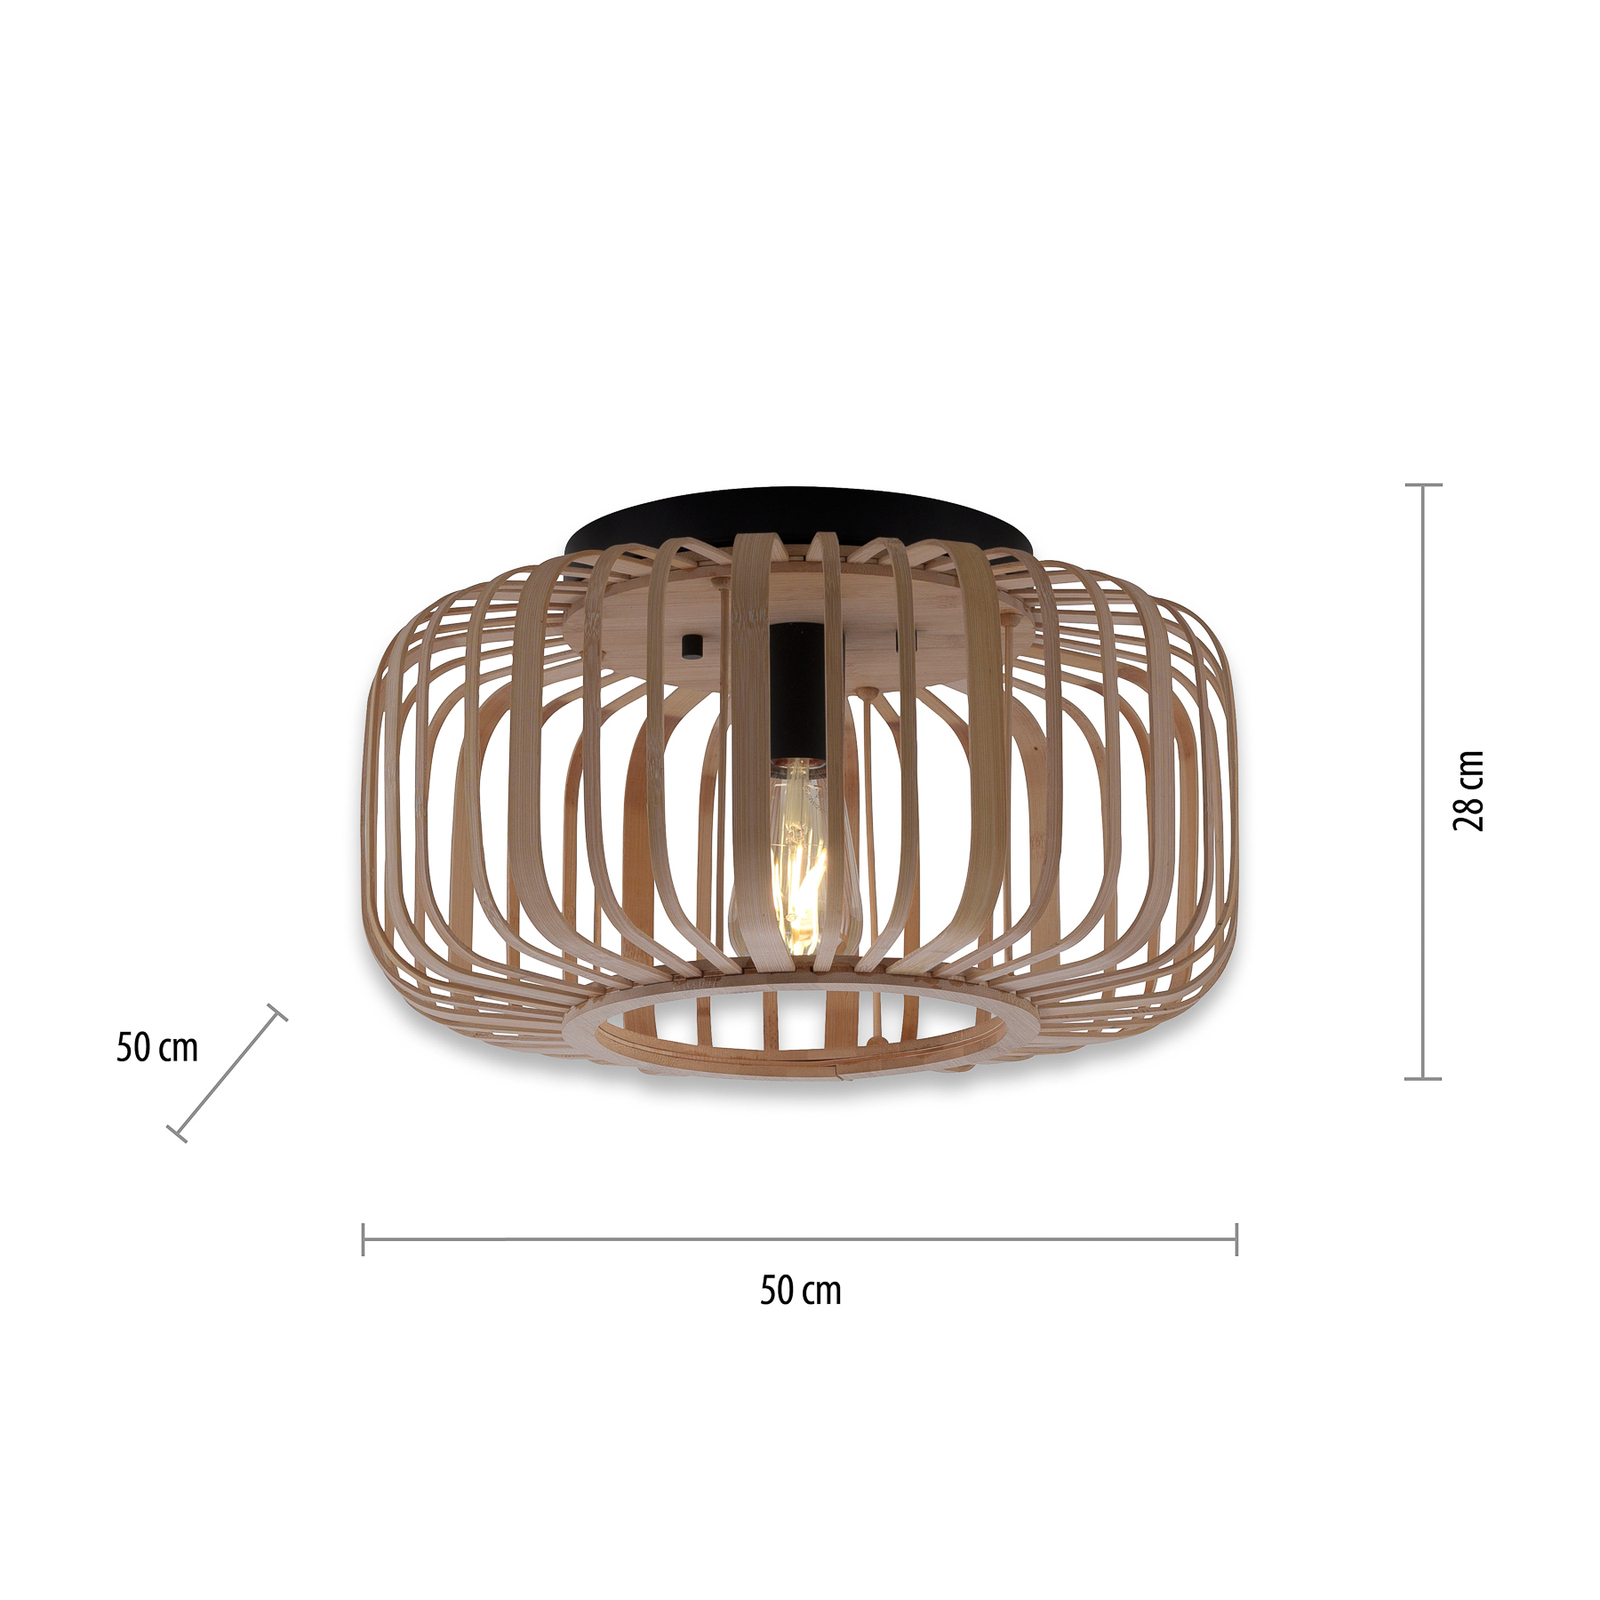 Deckenlampe Racoon aus Holz, dicke Streben, Ø 52cm